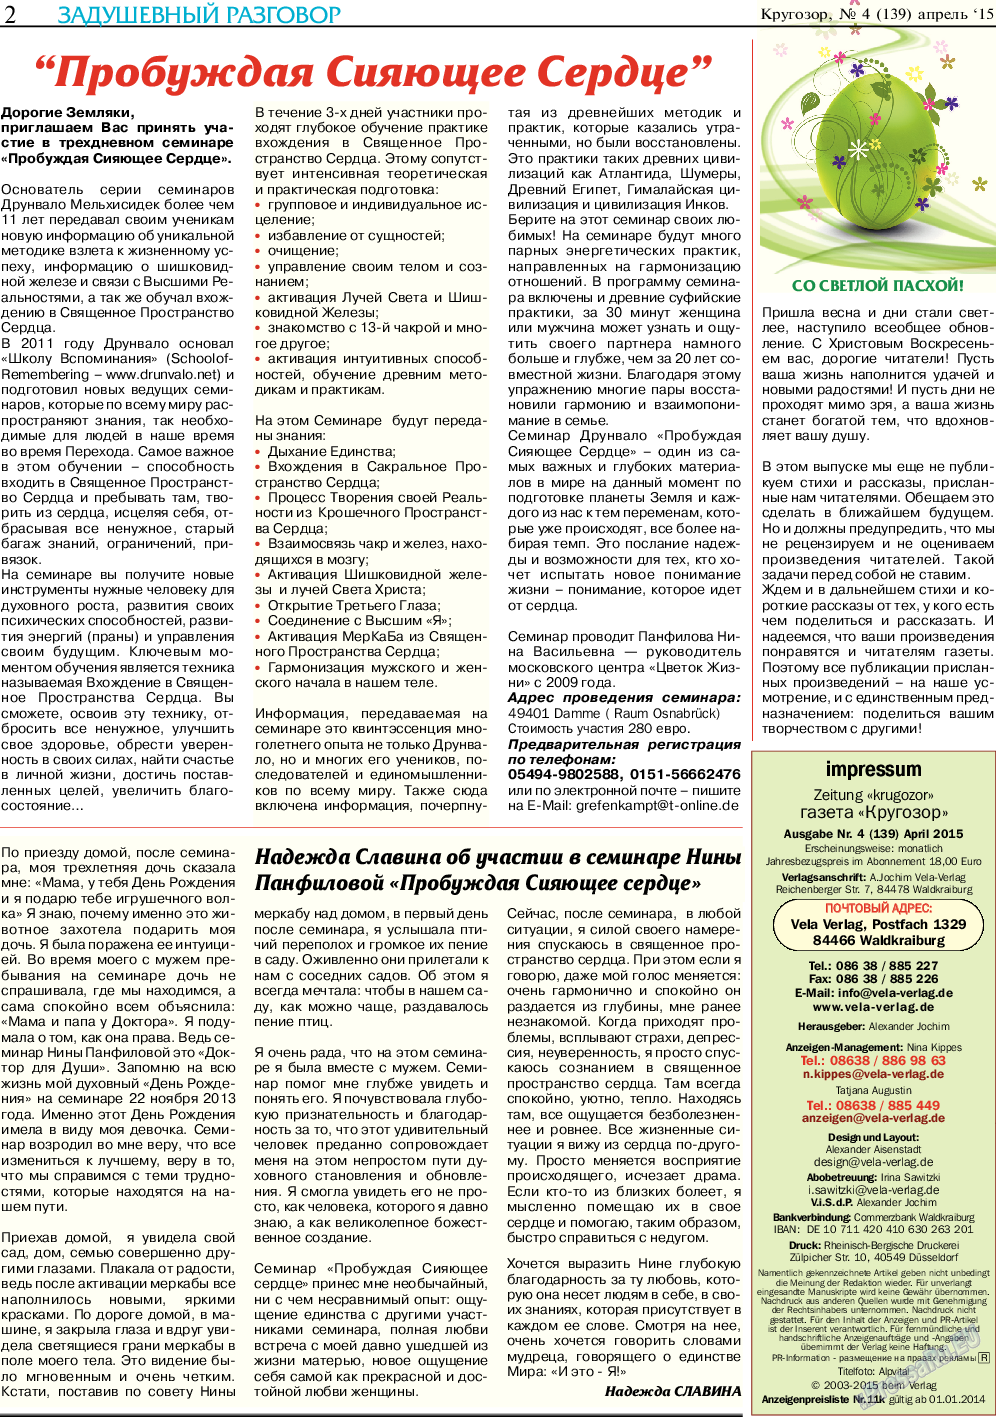 Кругозор, газета. 2015 №4 стр.2